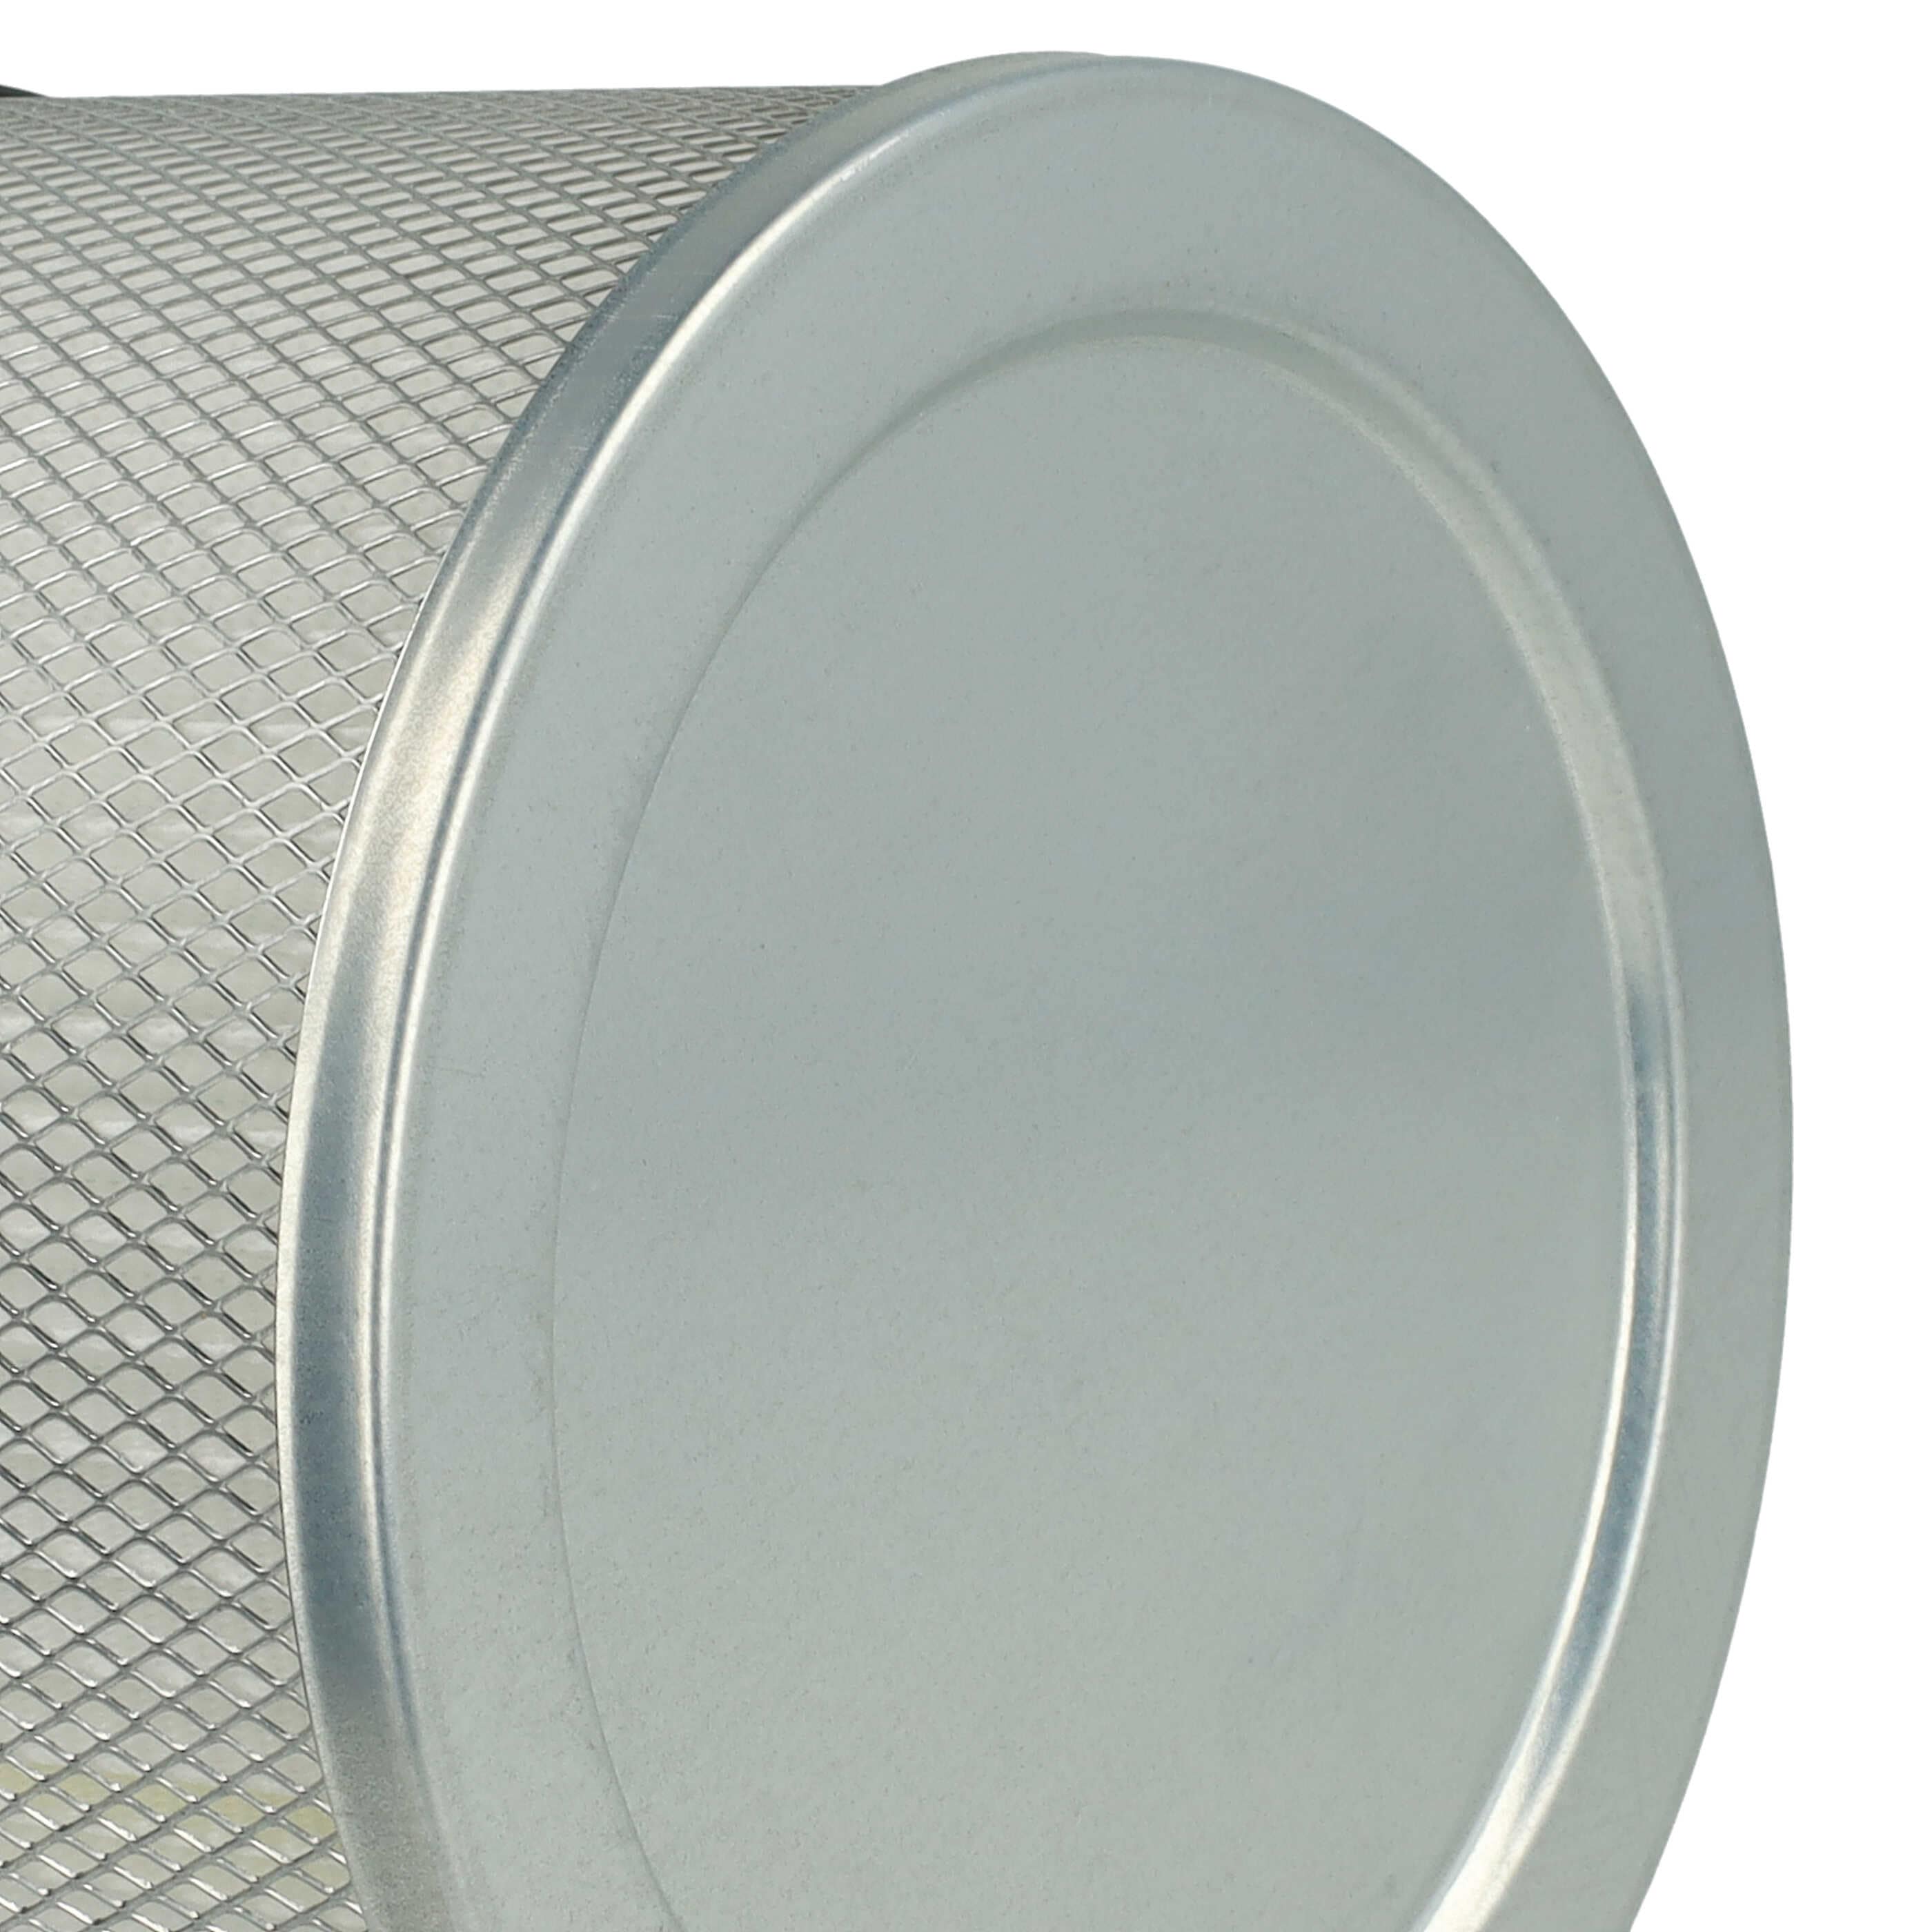 Filtro sostituisce ROWI 212010019 per aspiracenere - filtro a pieghe, bianco / argento